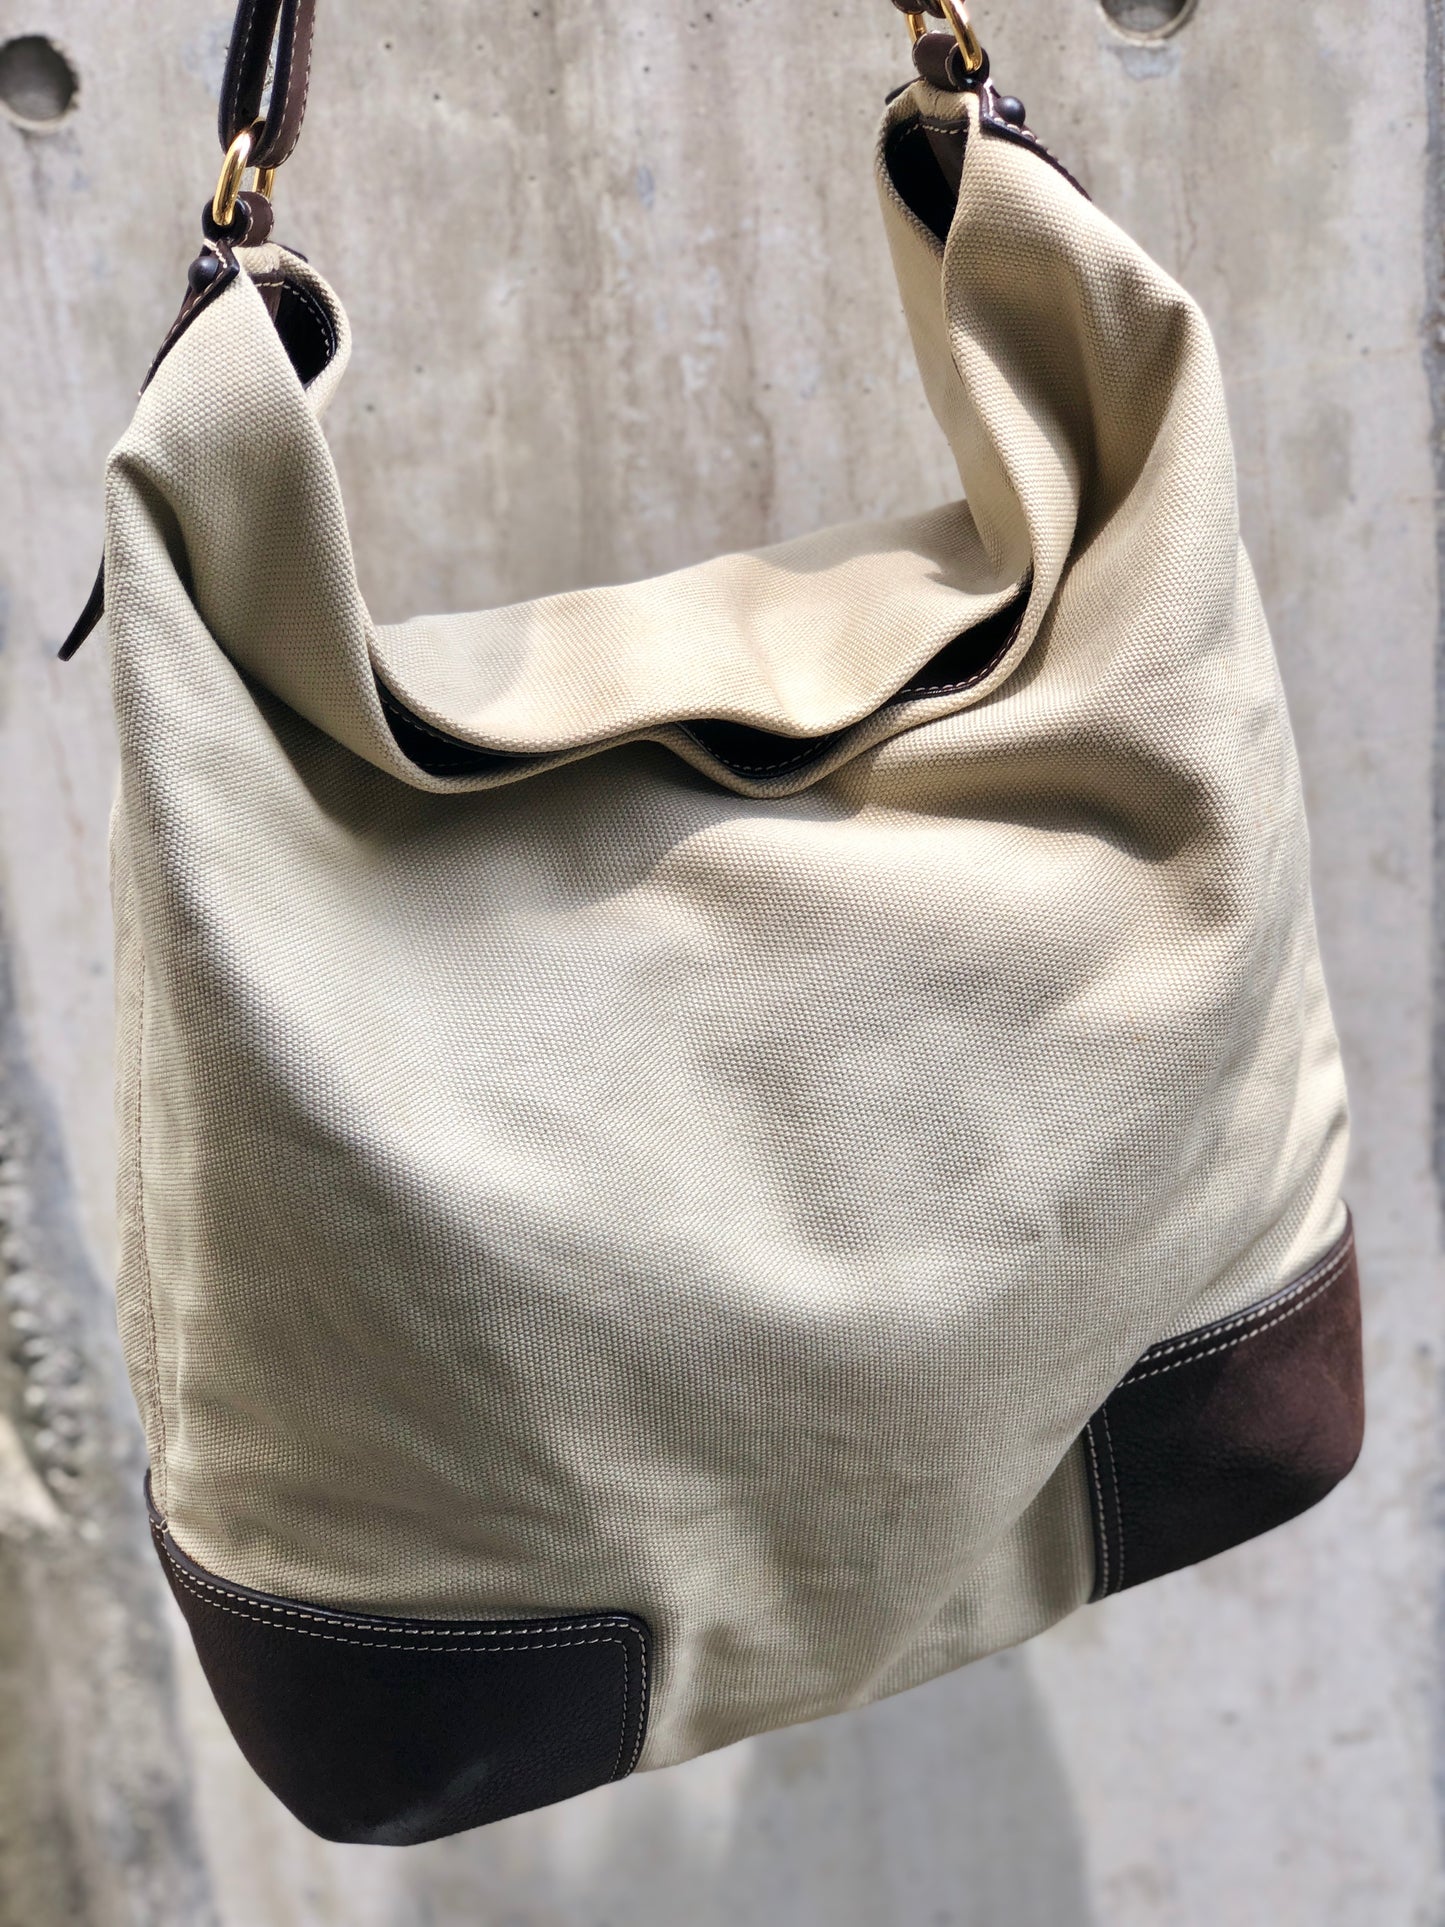 LOEWE Anagram canvas shoulder bag beige brown vintage old ki4dac